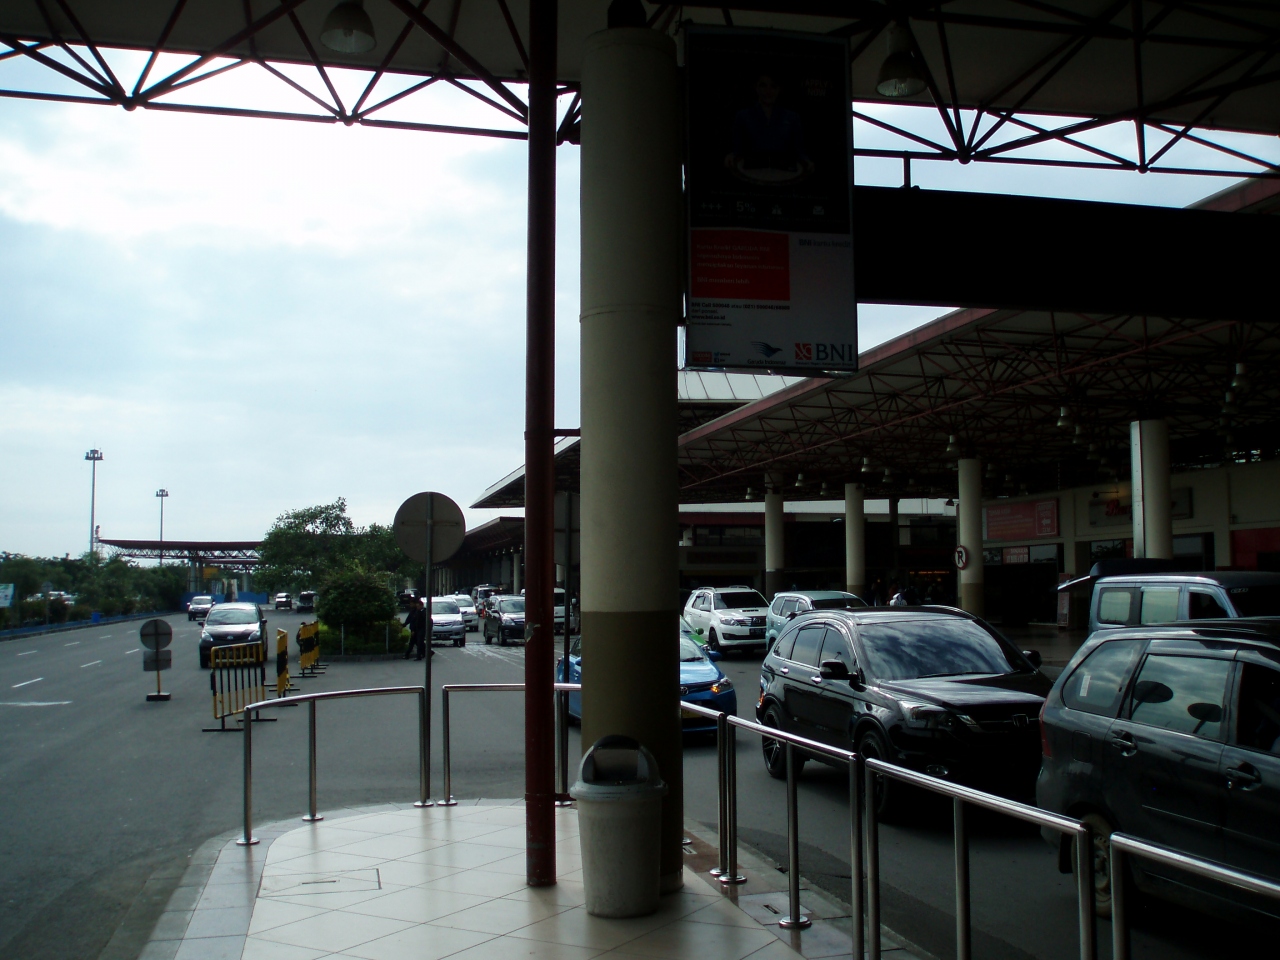 ジュアンダ国際空港 (SUB)                Juanda International Airport (SUB)